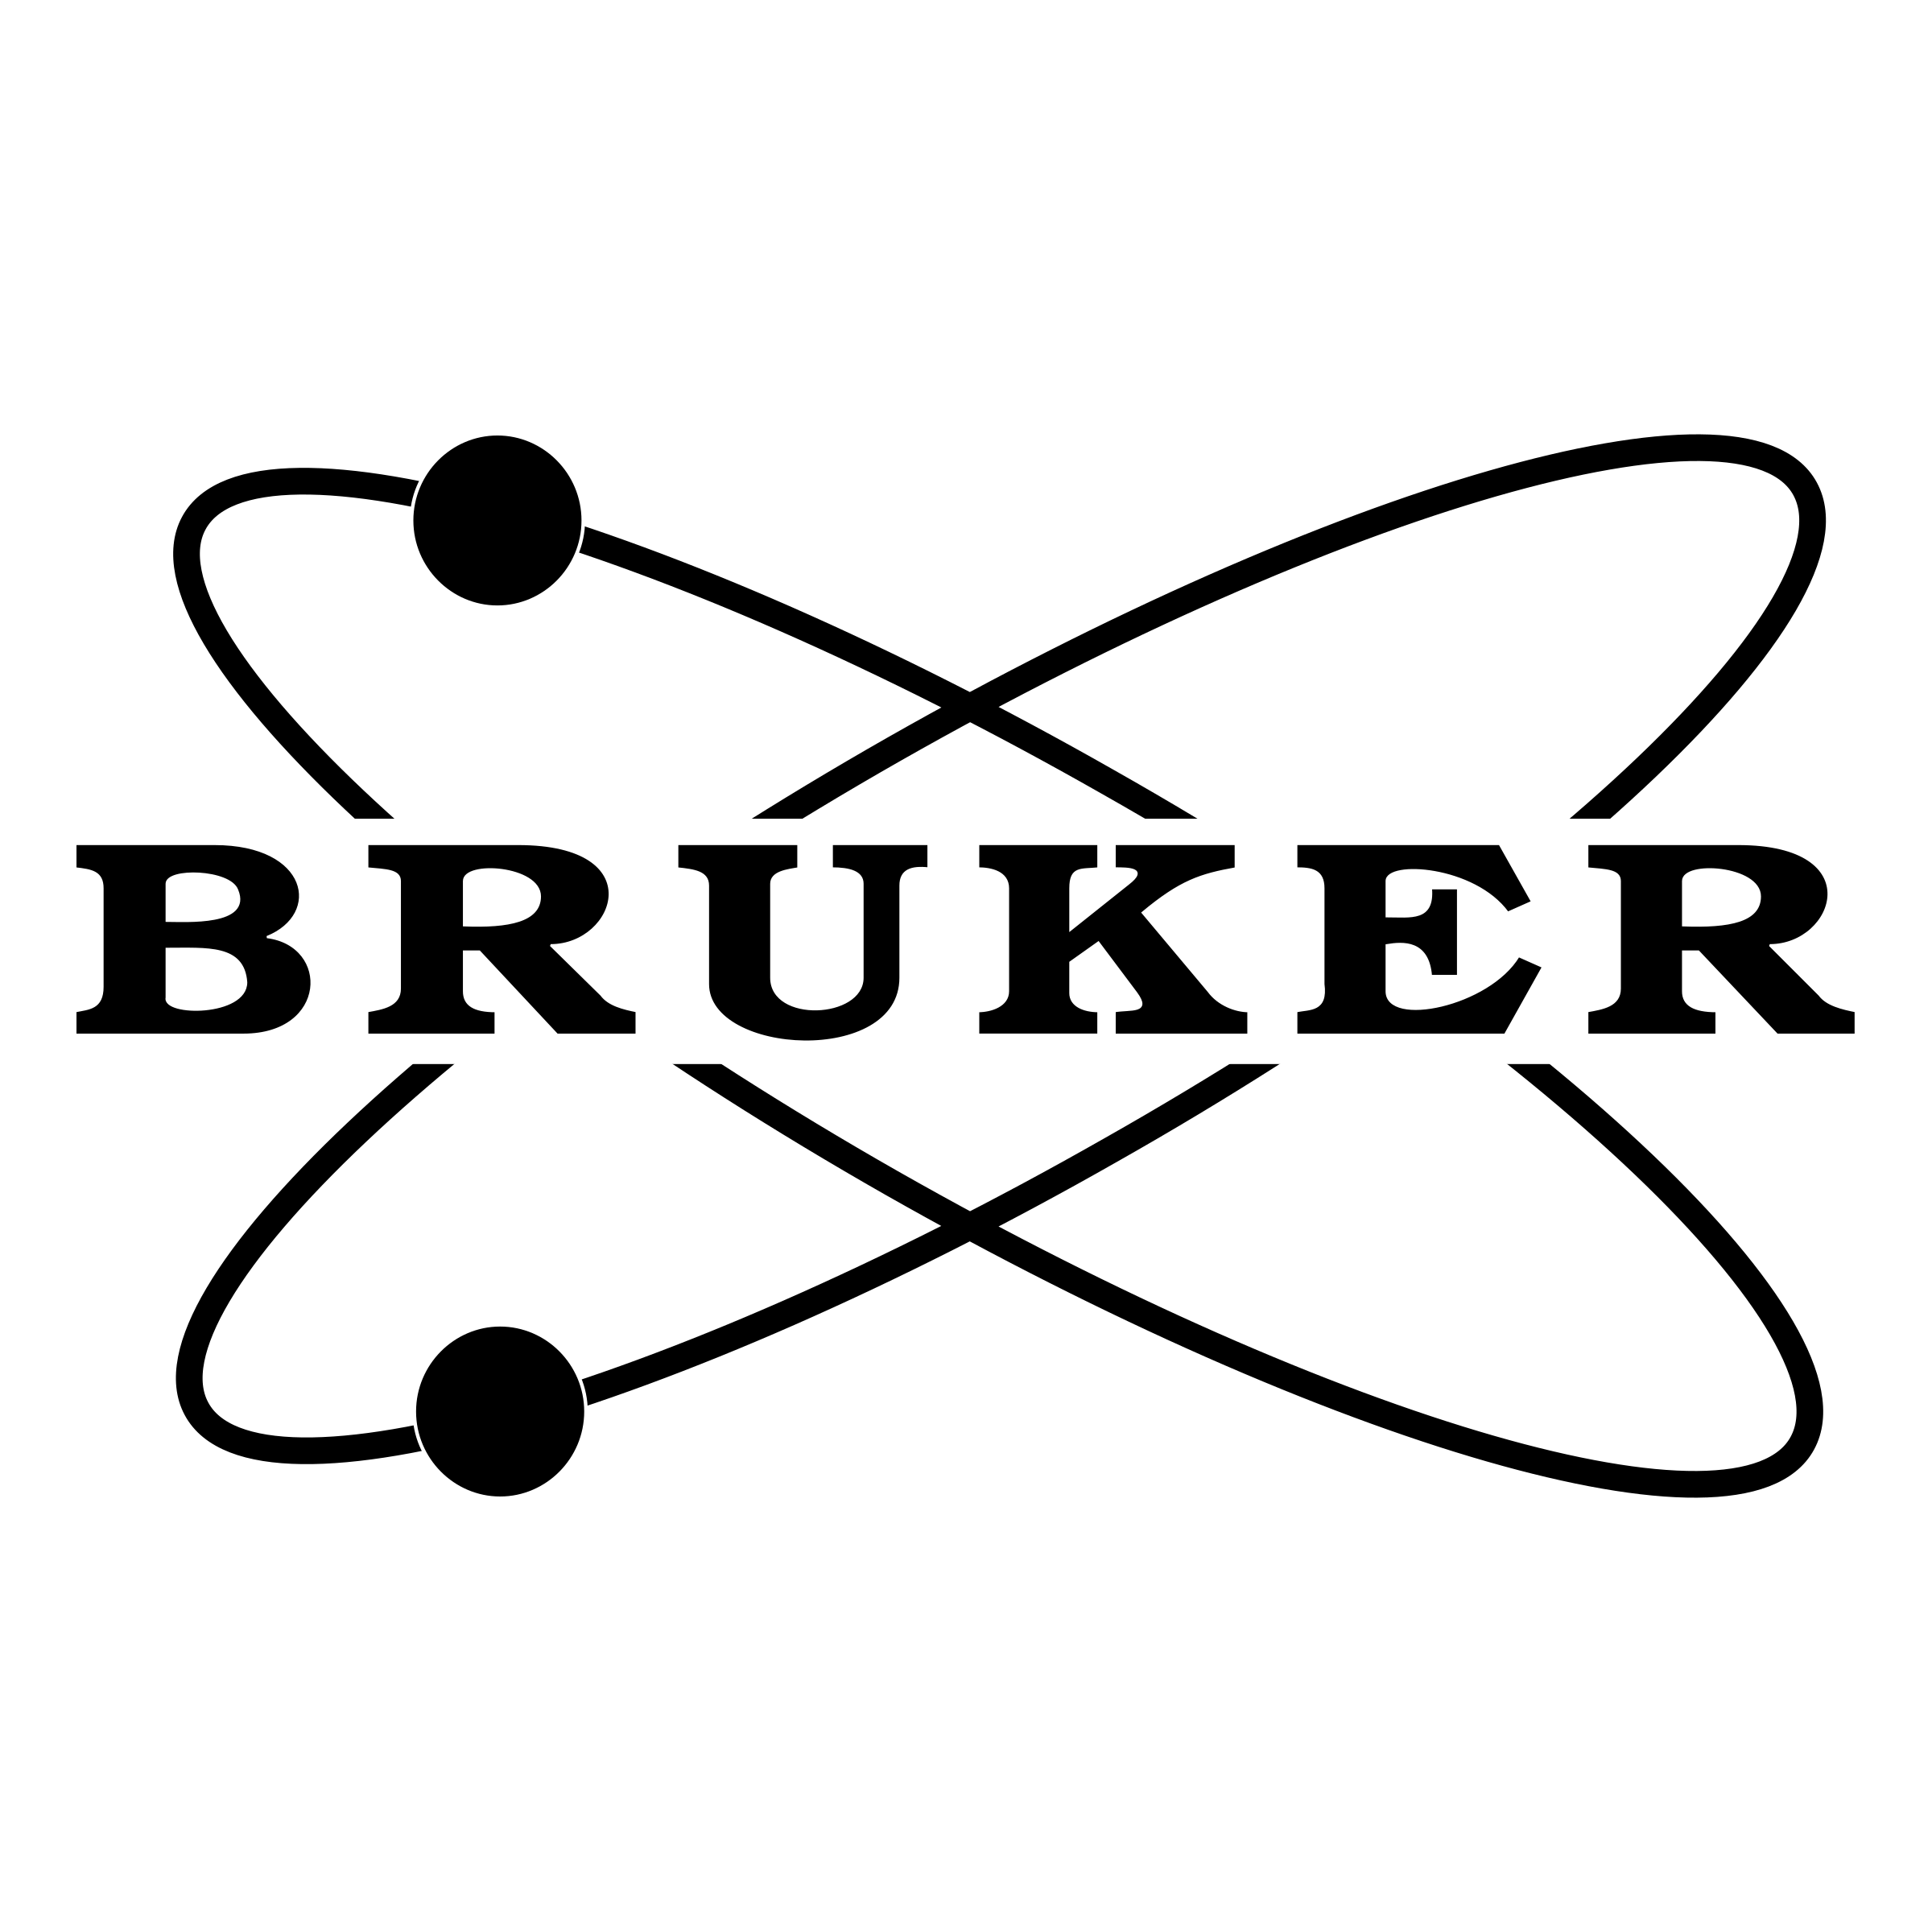 Bruker Corporation logo